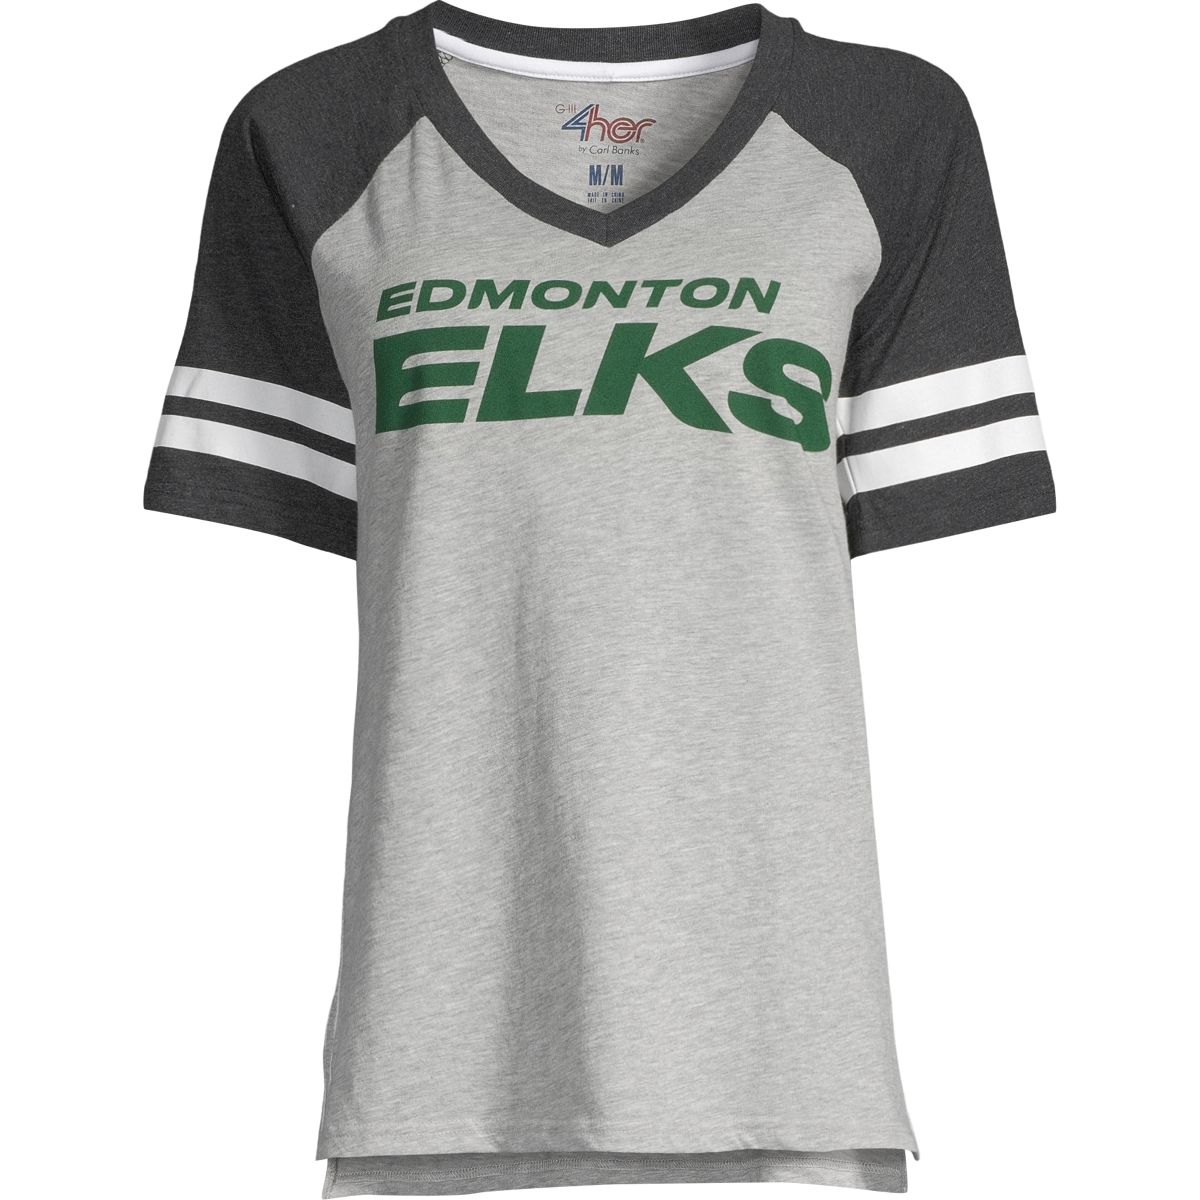 G Iii 4Her By Carl Banks White Winnipeg Jets Hockey Girls Shirt